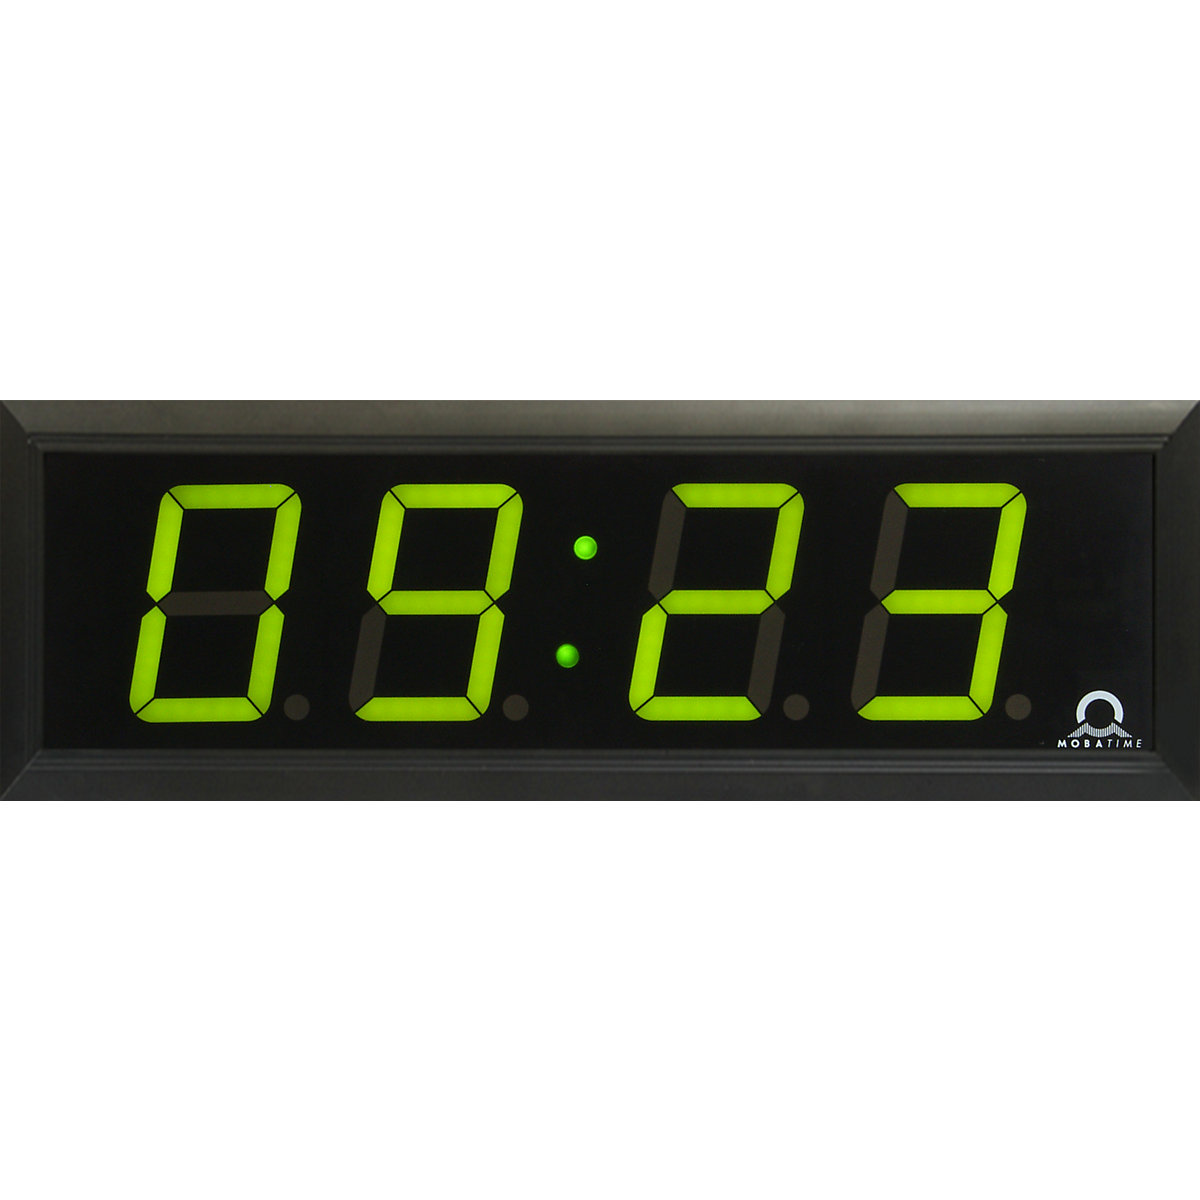 Digitální LED hodiny, v x š x h 118 x 333 x 39 mm, černá, zelená LED indikace-2